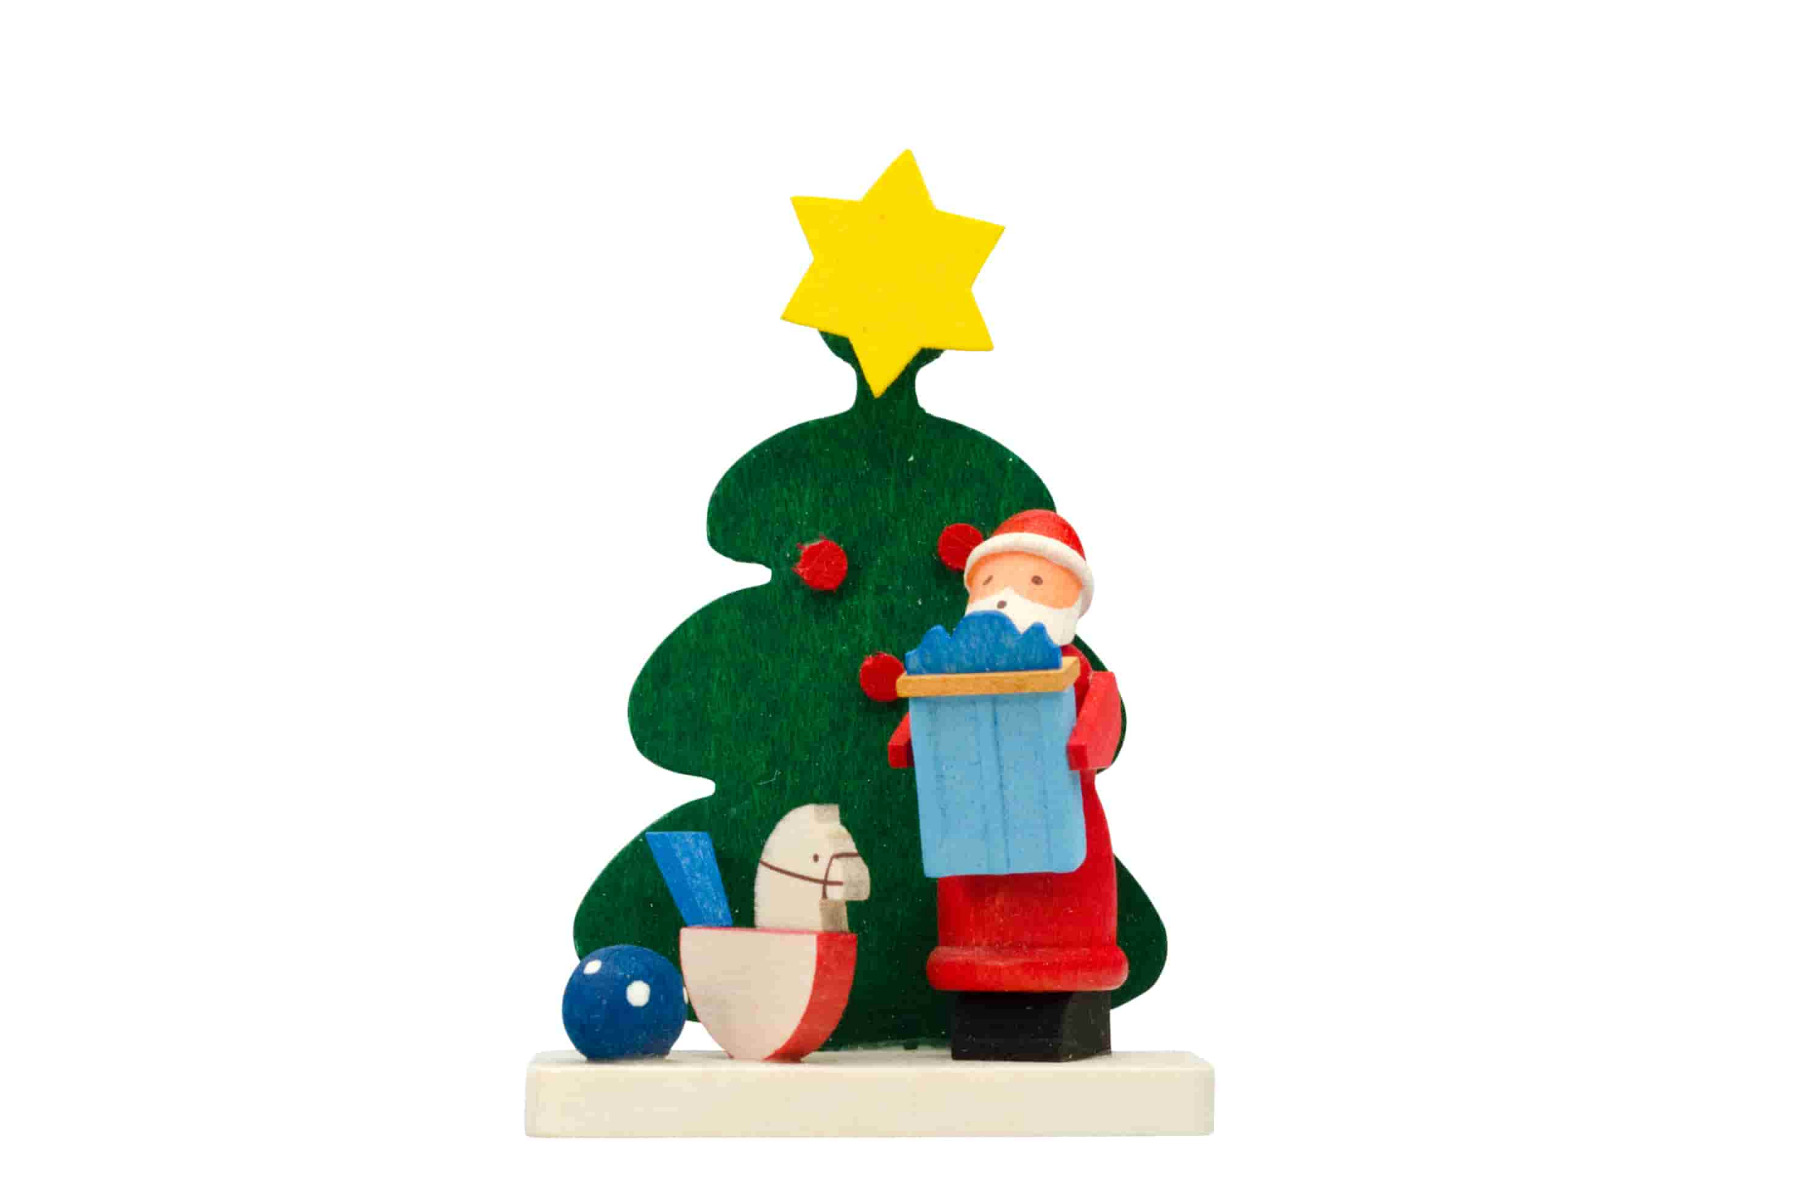 Baum-Weihnachtsmann mit Schaukelpferd als Baumschmuck